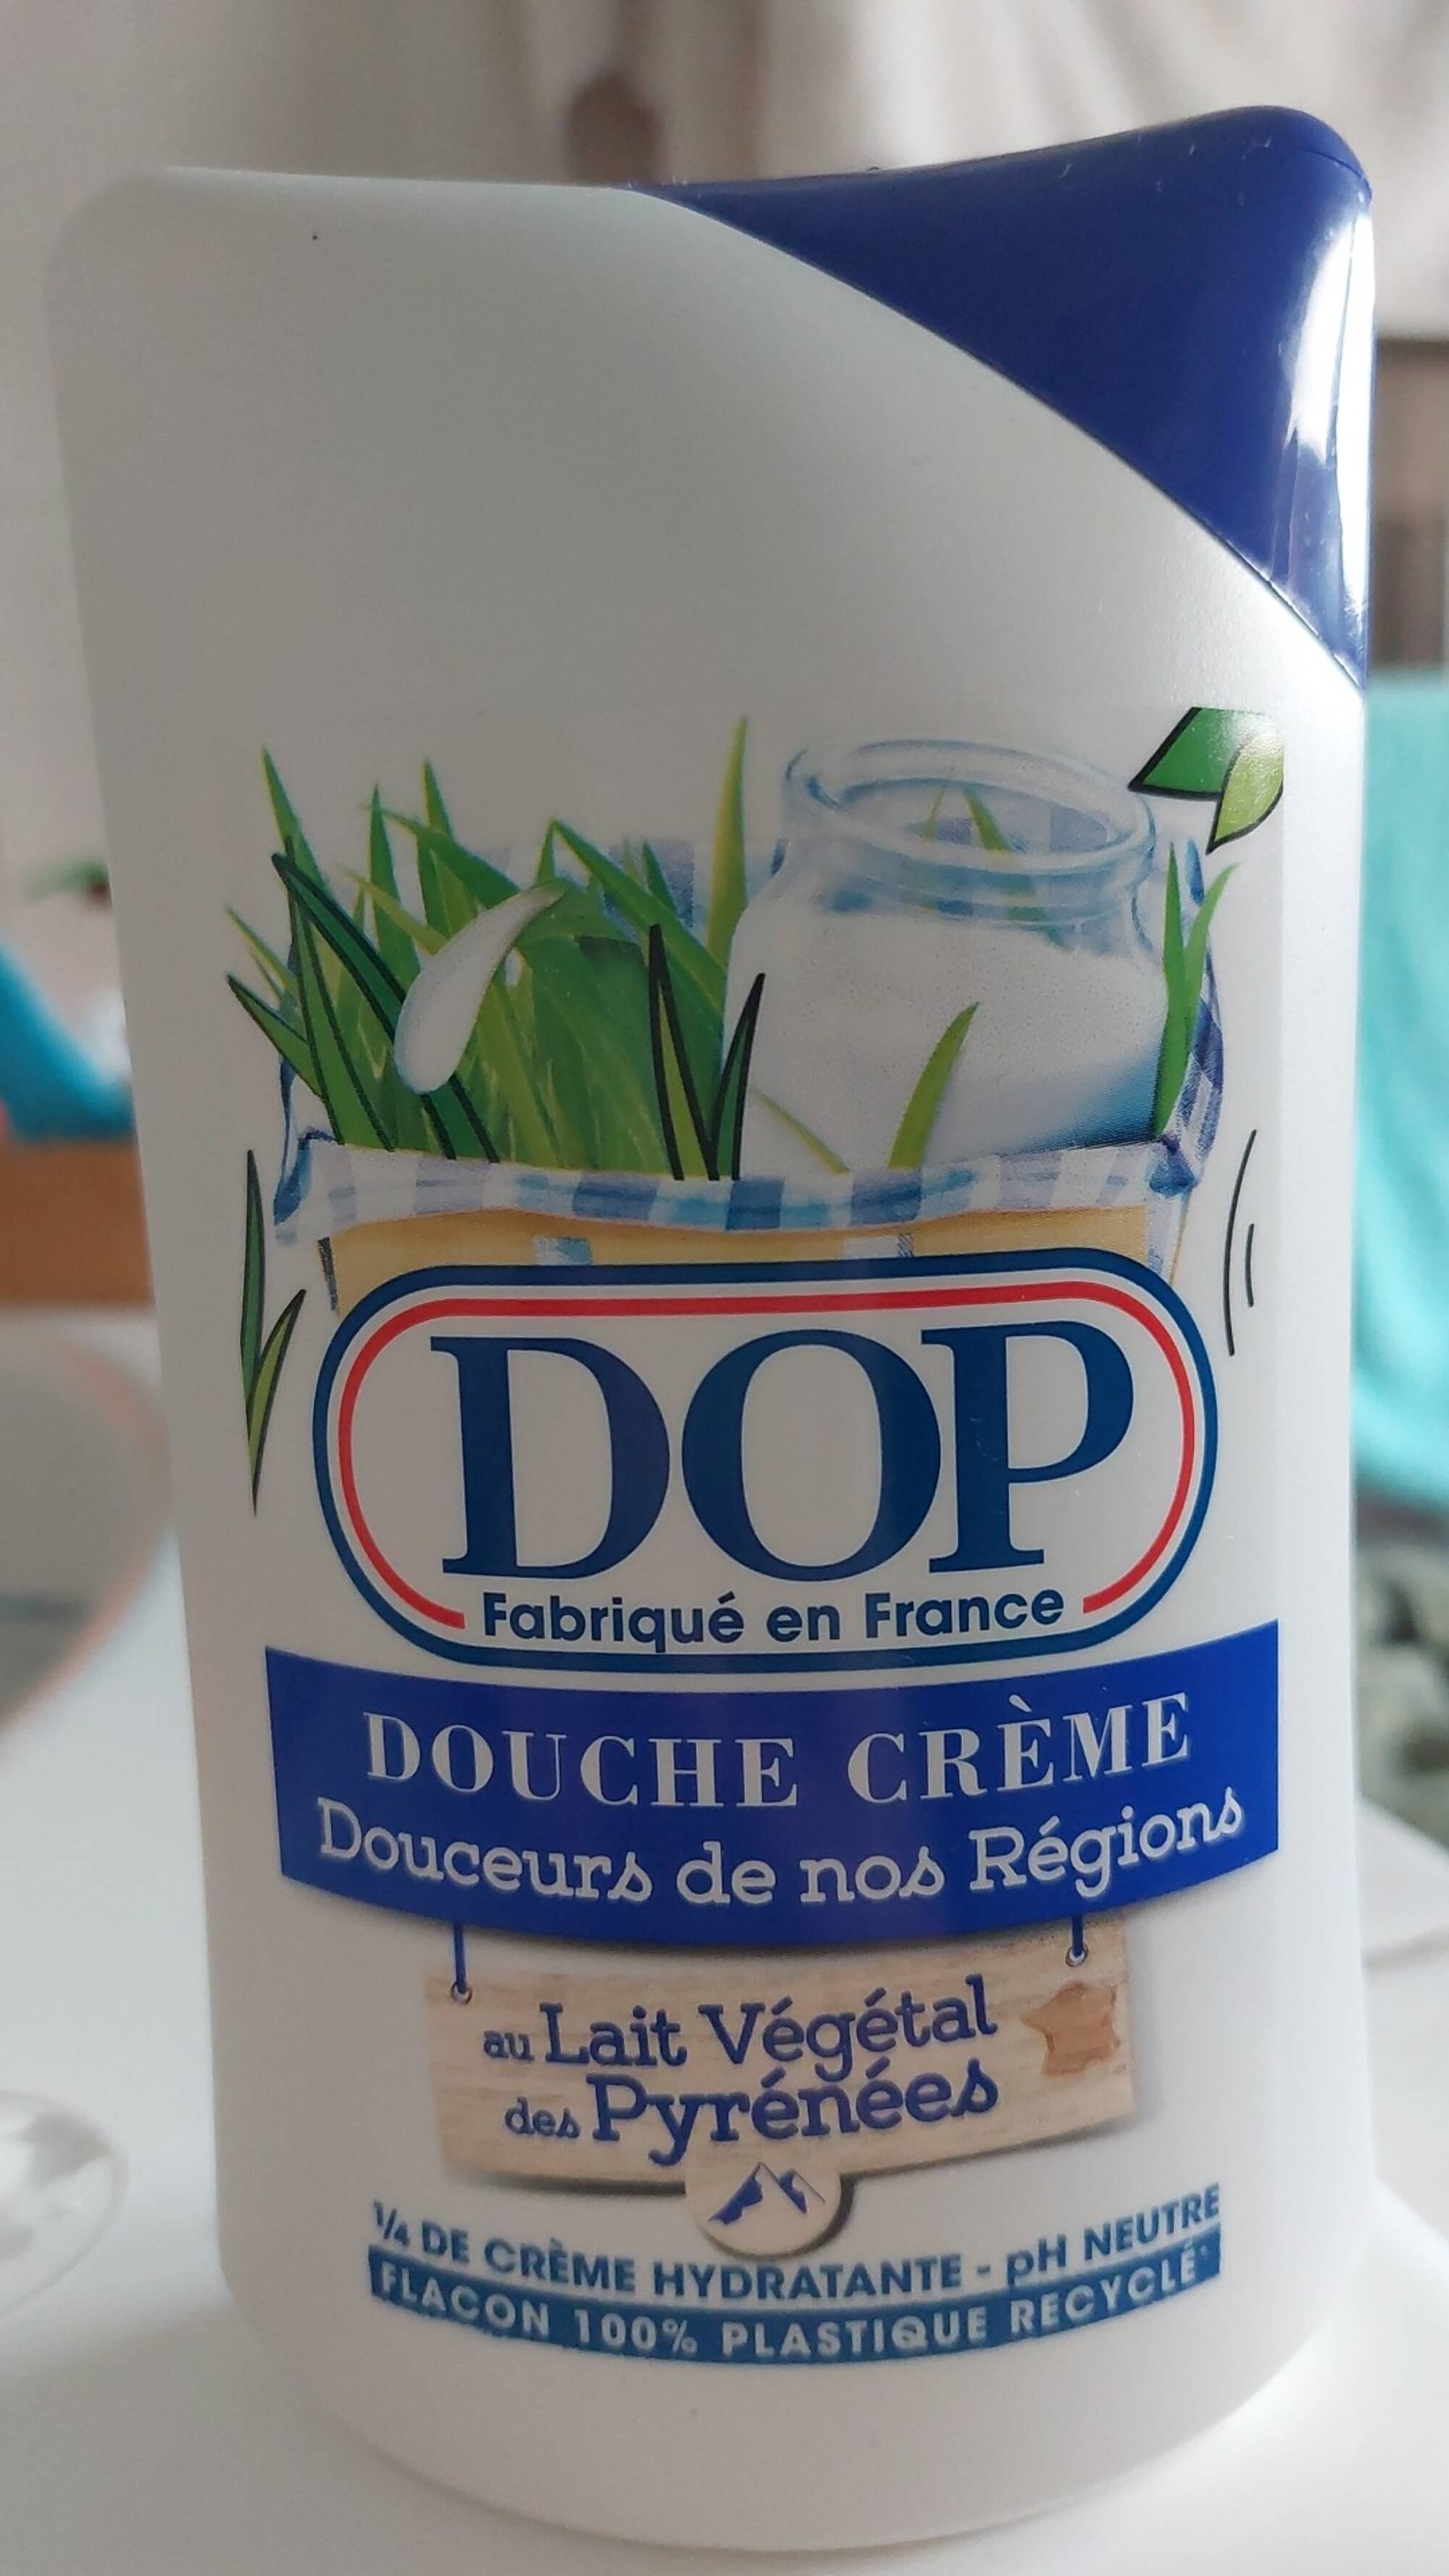 DOP - Douche crème au Lait végétal des Pyrénées